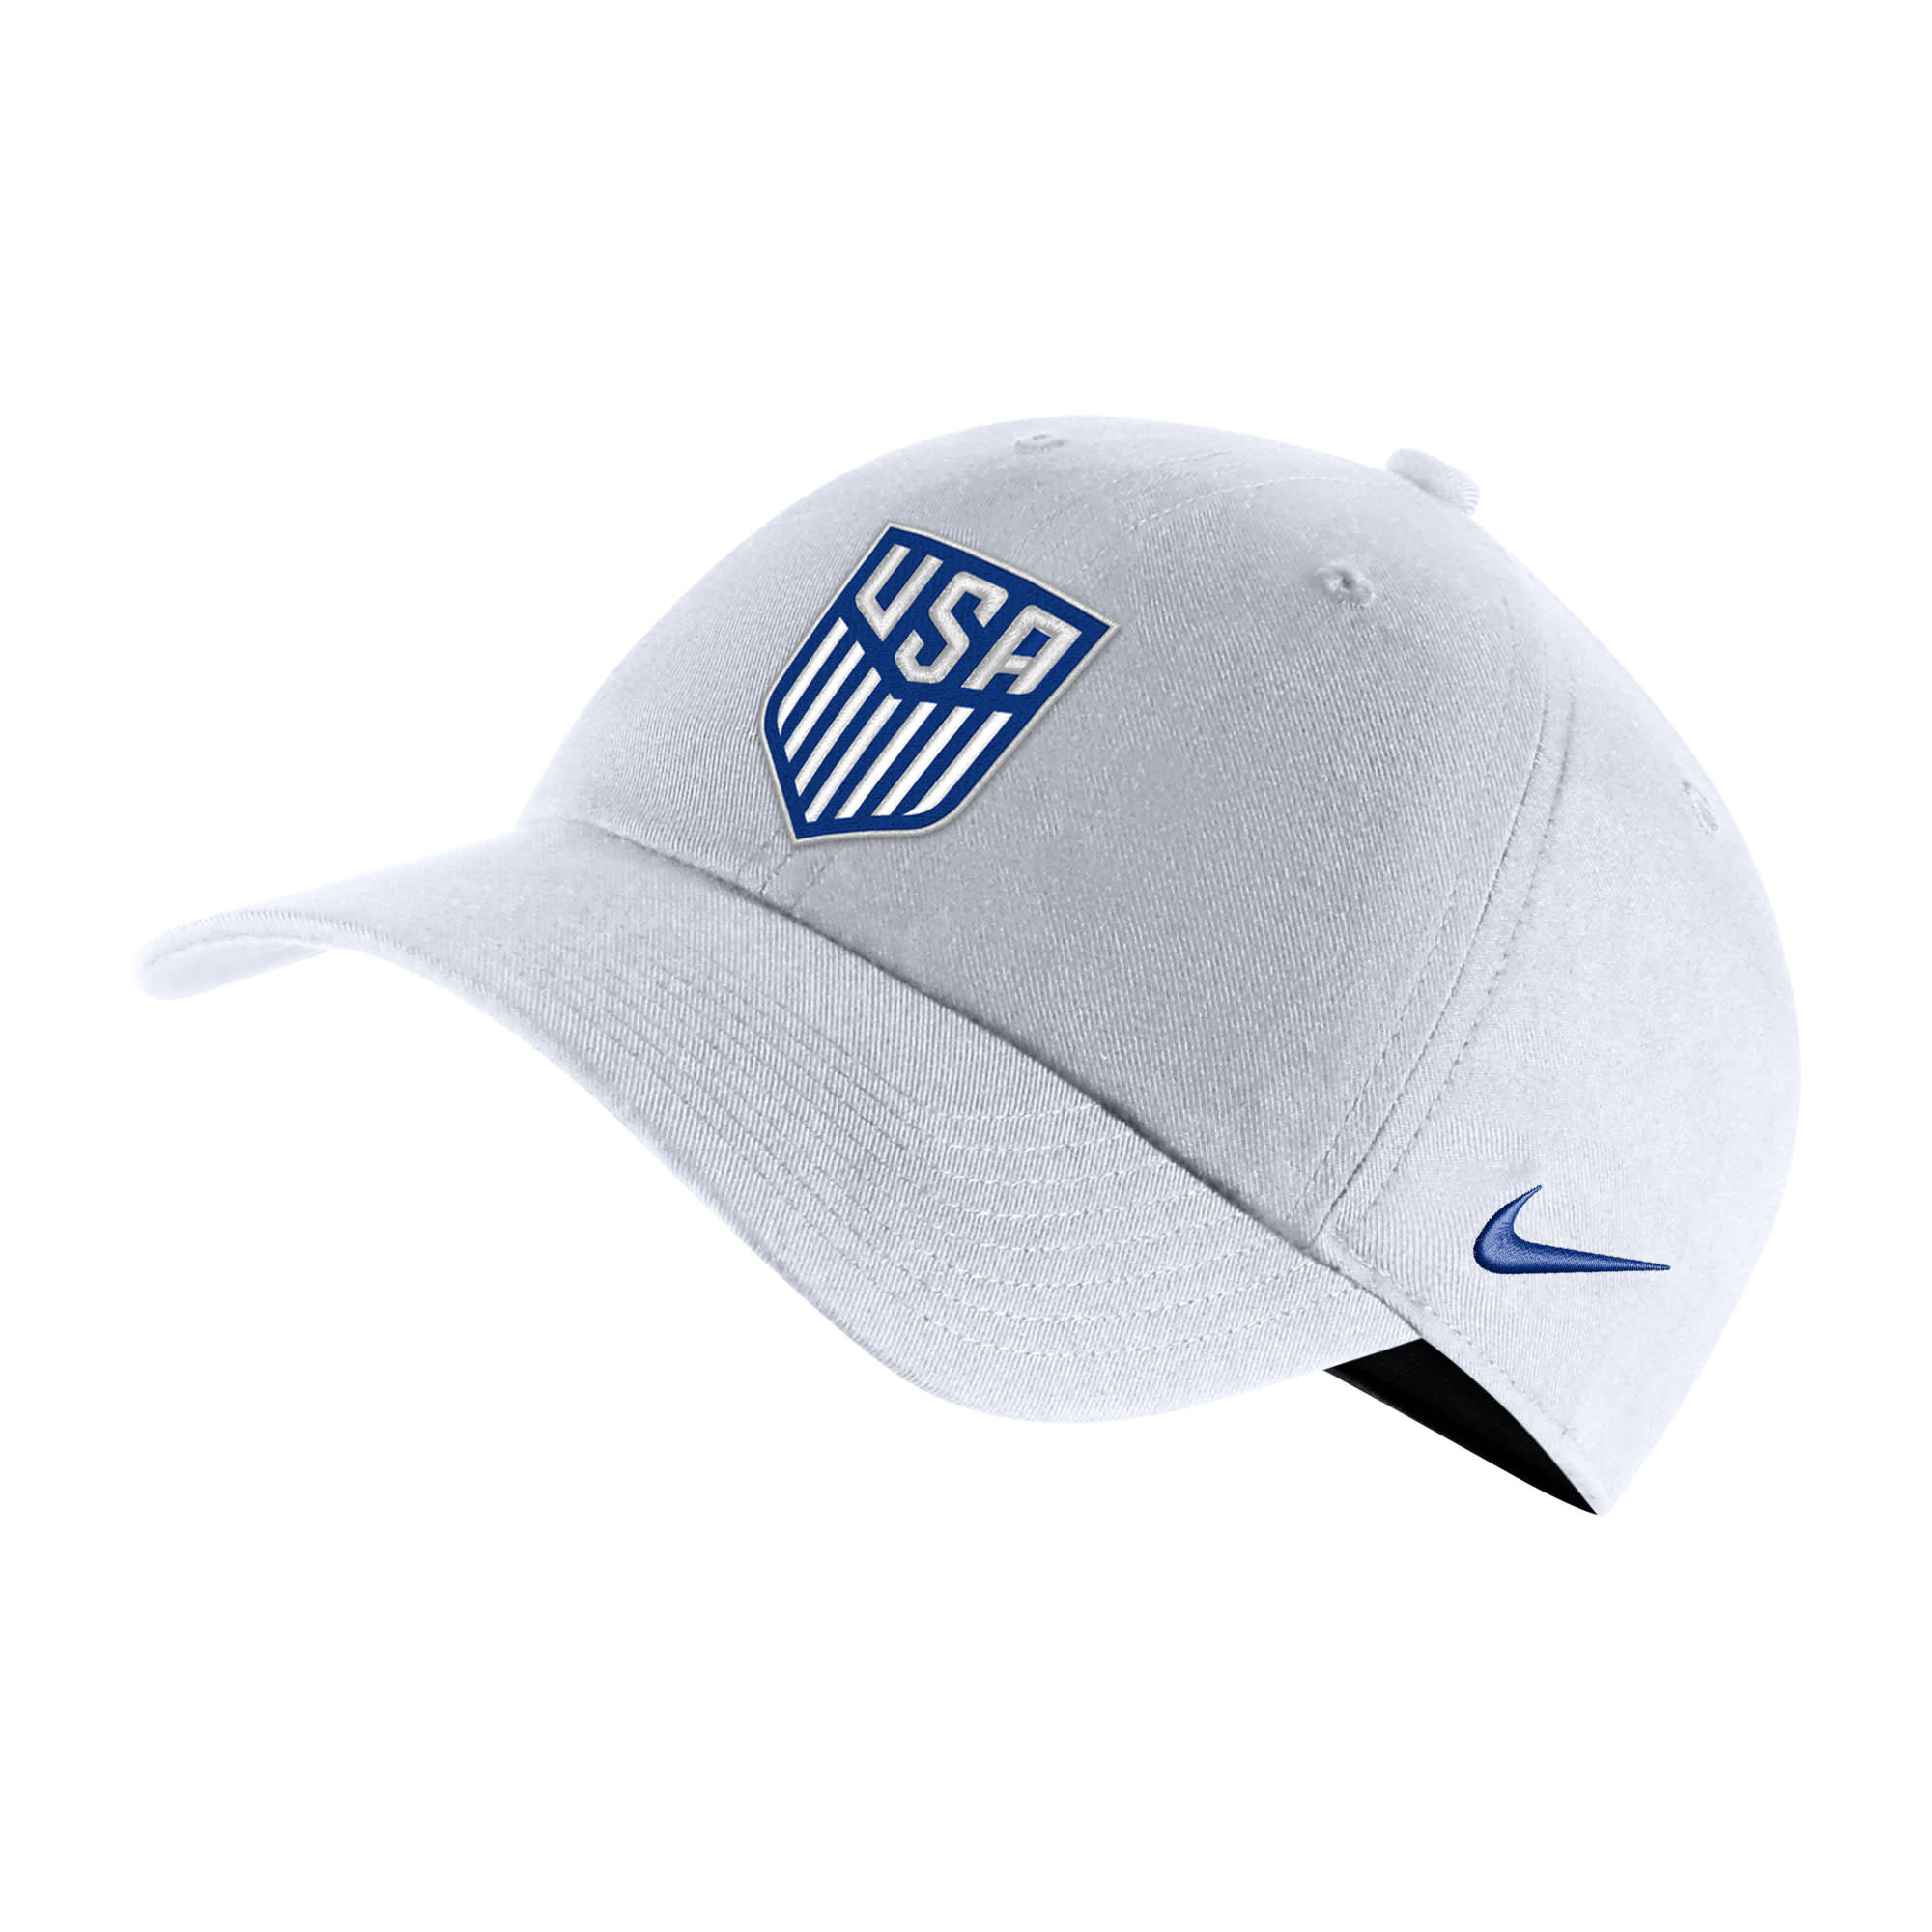 Atletico de Madrid Nike Heritage86 Performance Adjustable Hat - Blue